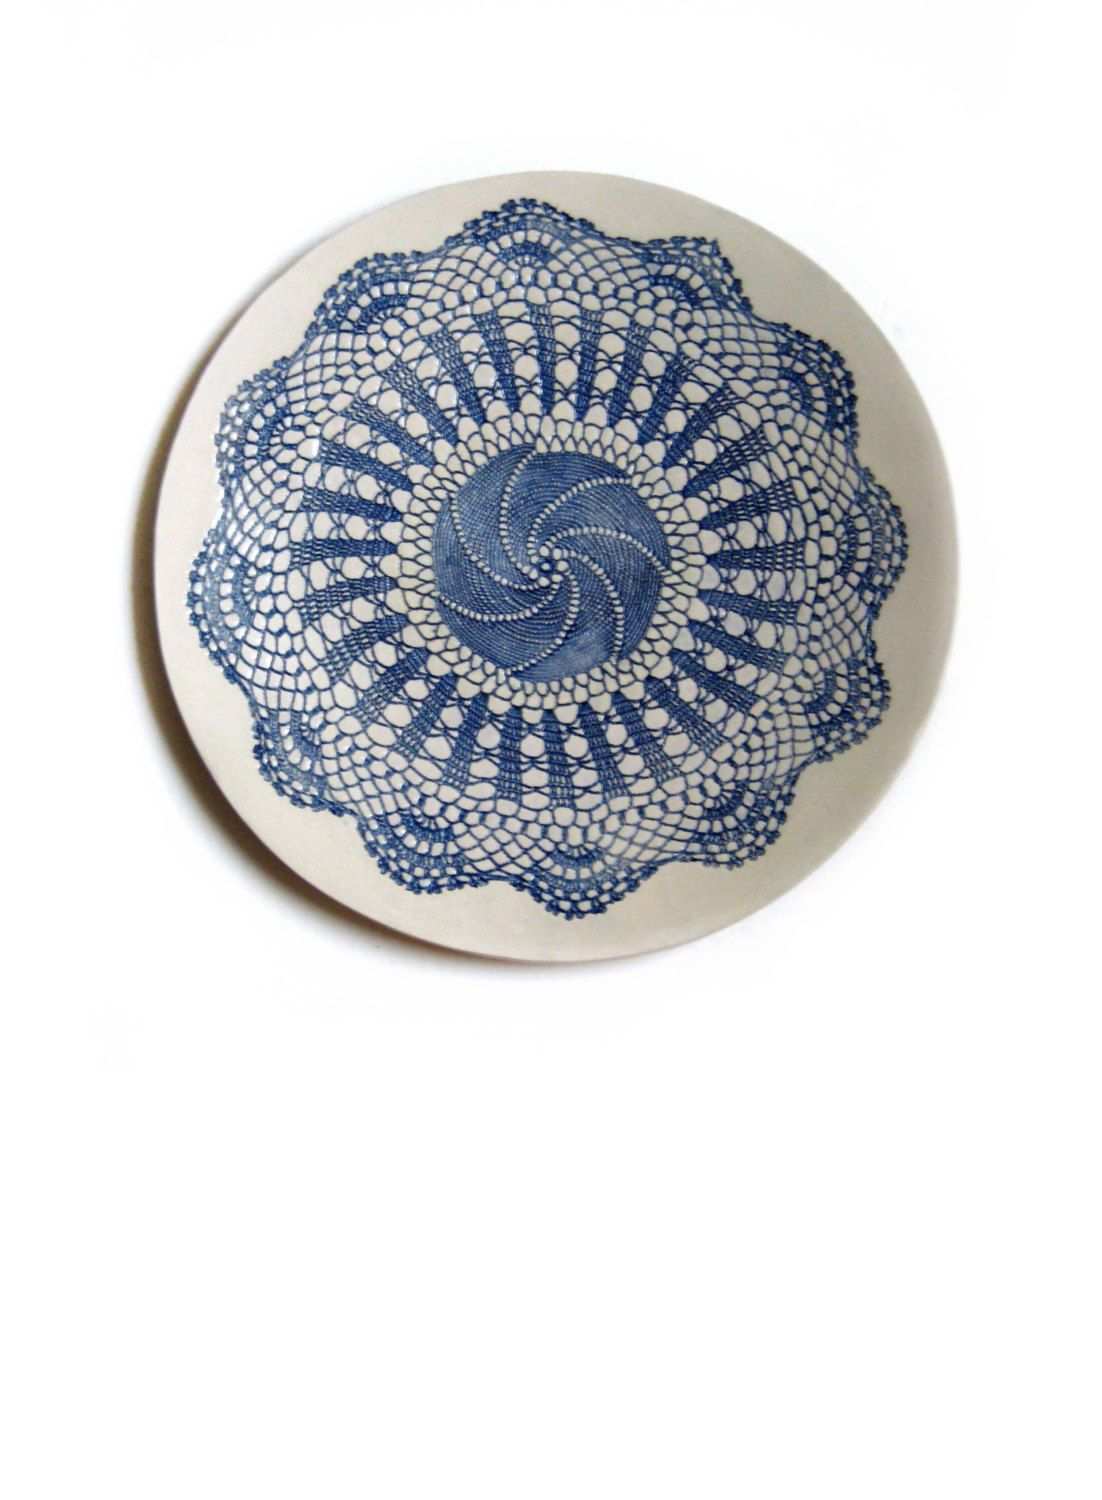 Keramik Wand Teller Mandala Teller By Tanja Shpal Wand Etsy Ceramics Ceramic Art Lace Doilies